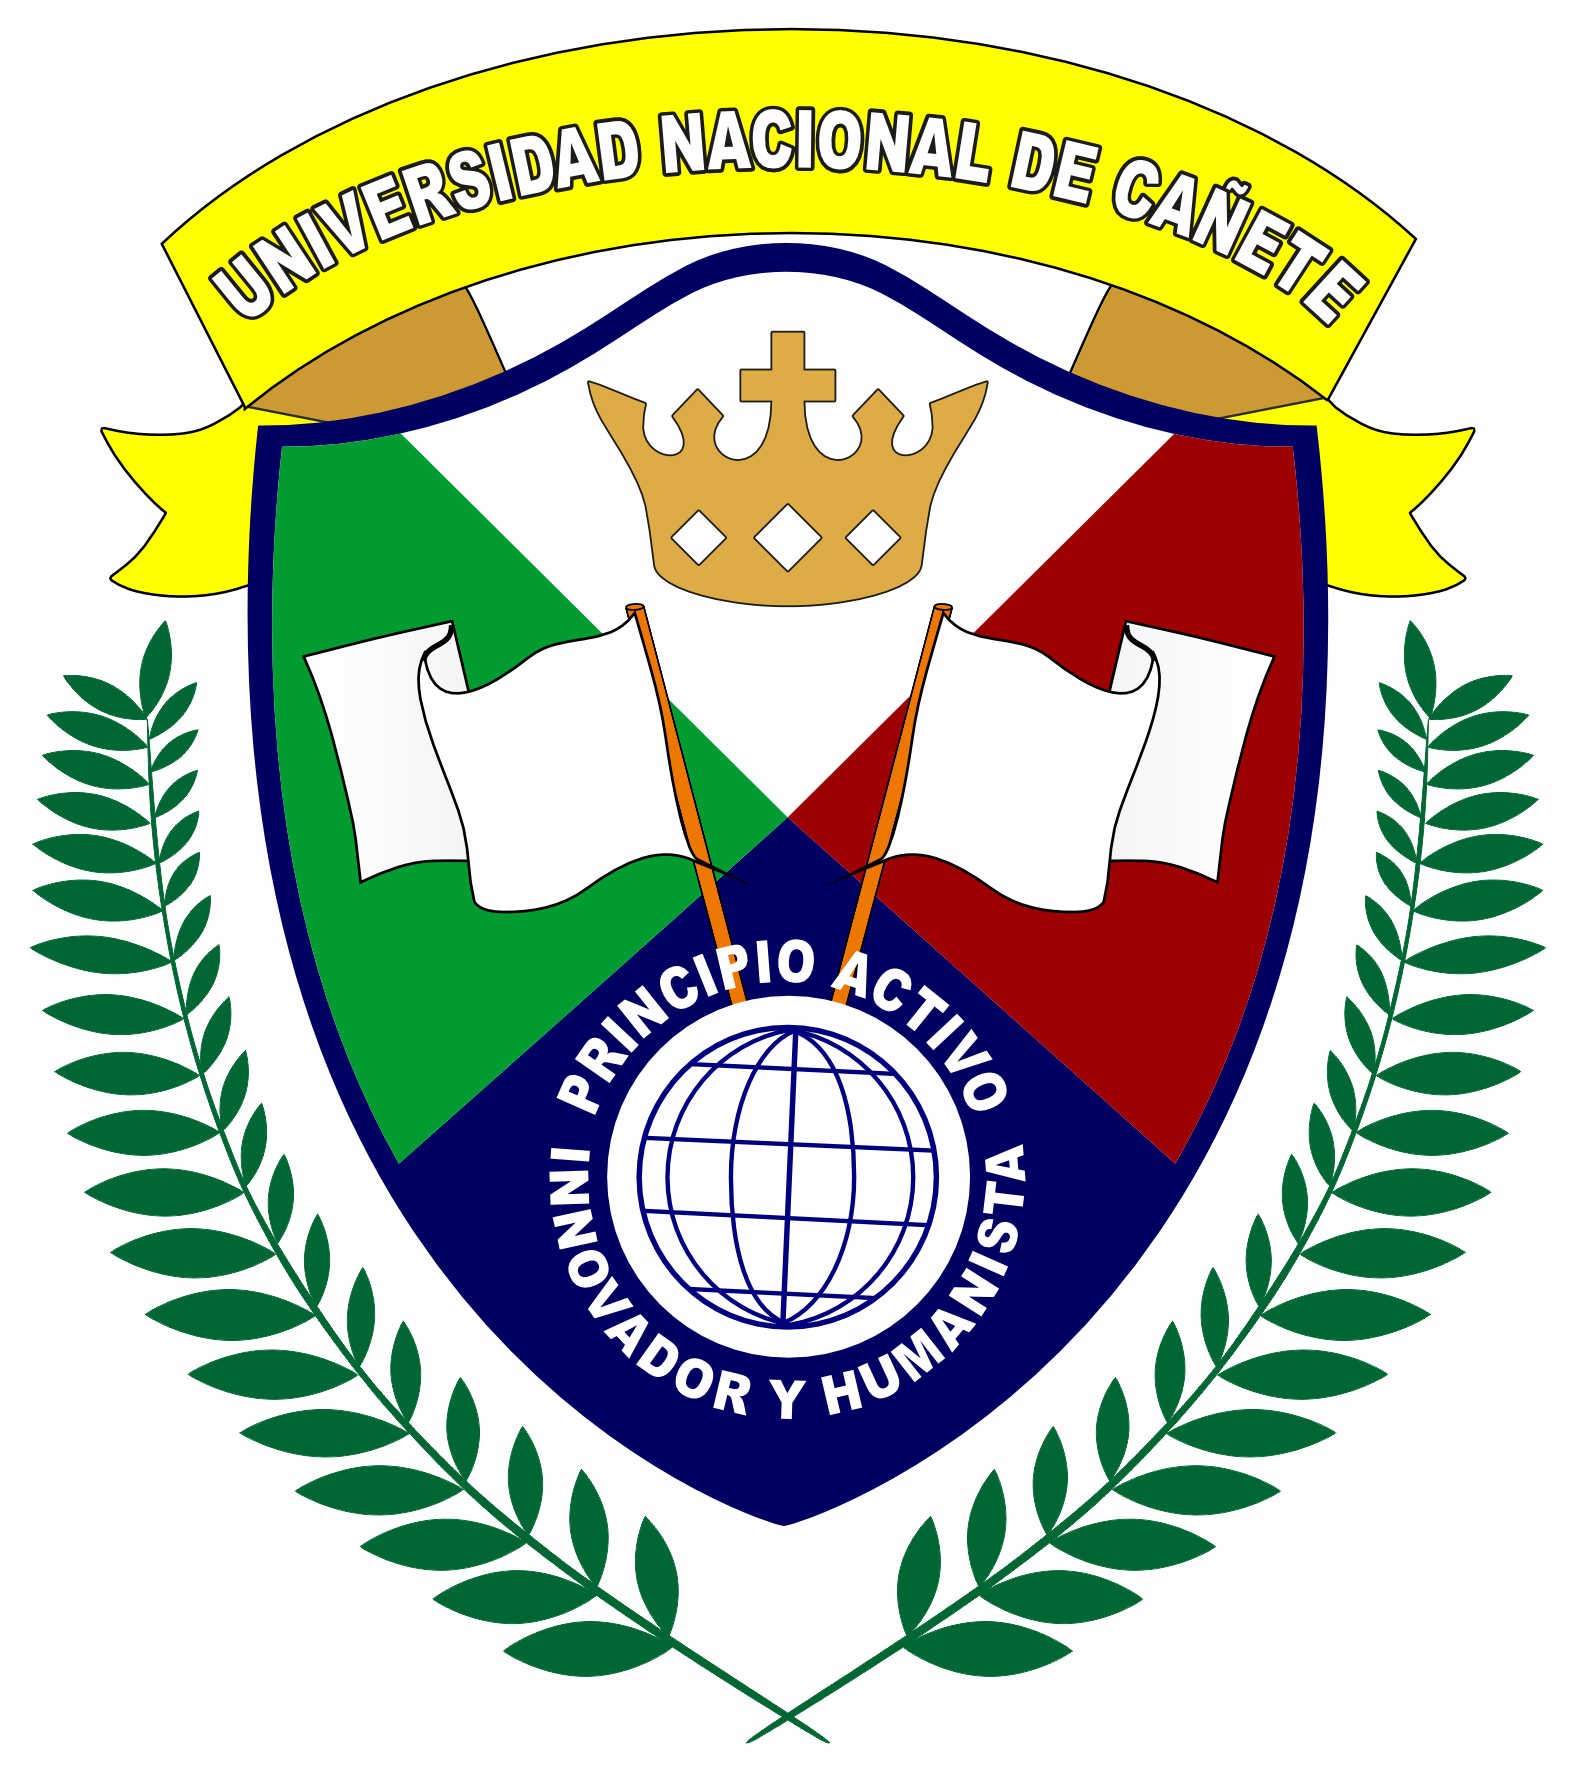 UNDC Logo